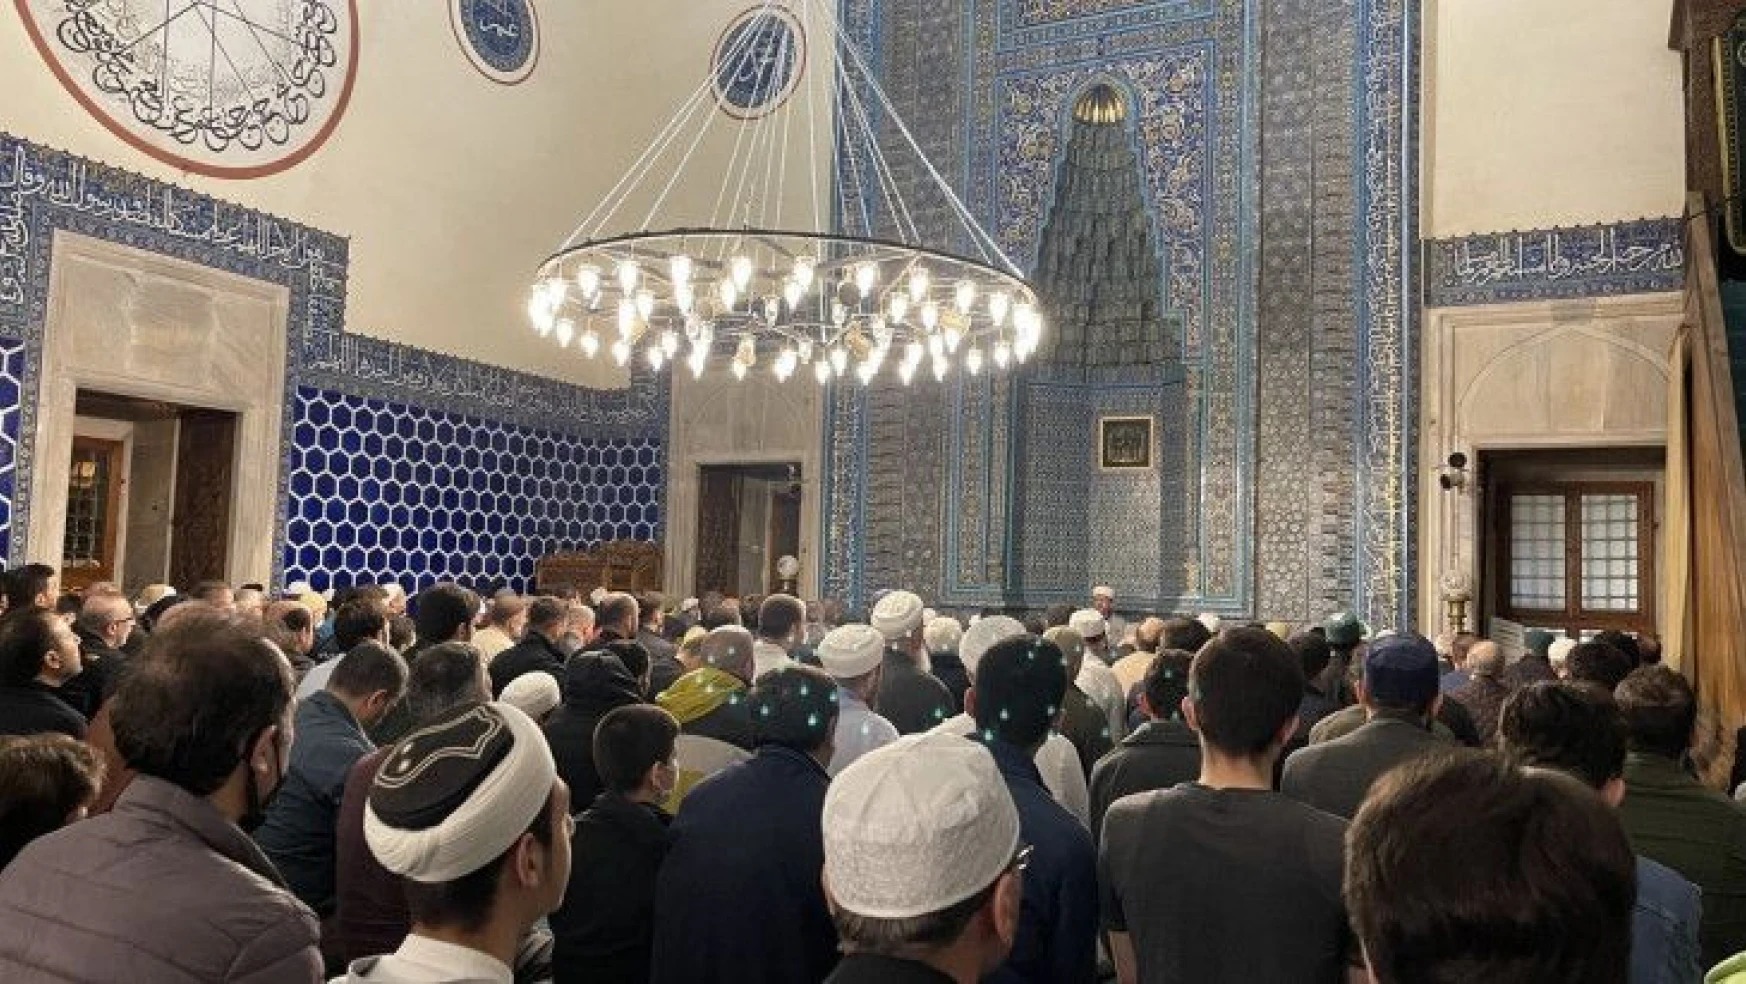 Bursa'da selatin camileri son teravih namazında doldu taştı